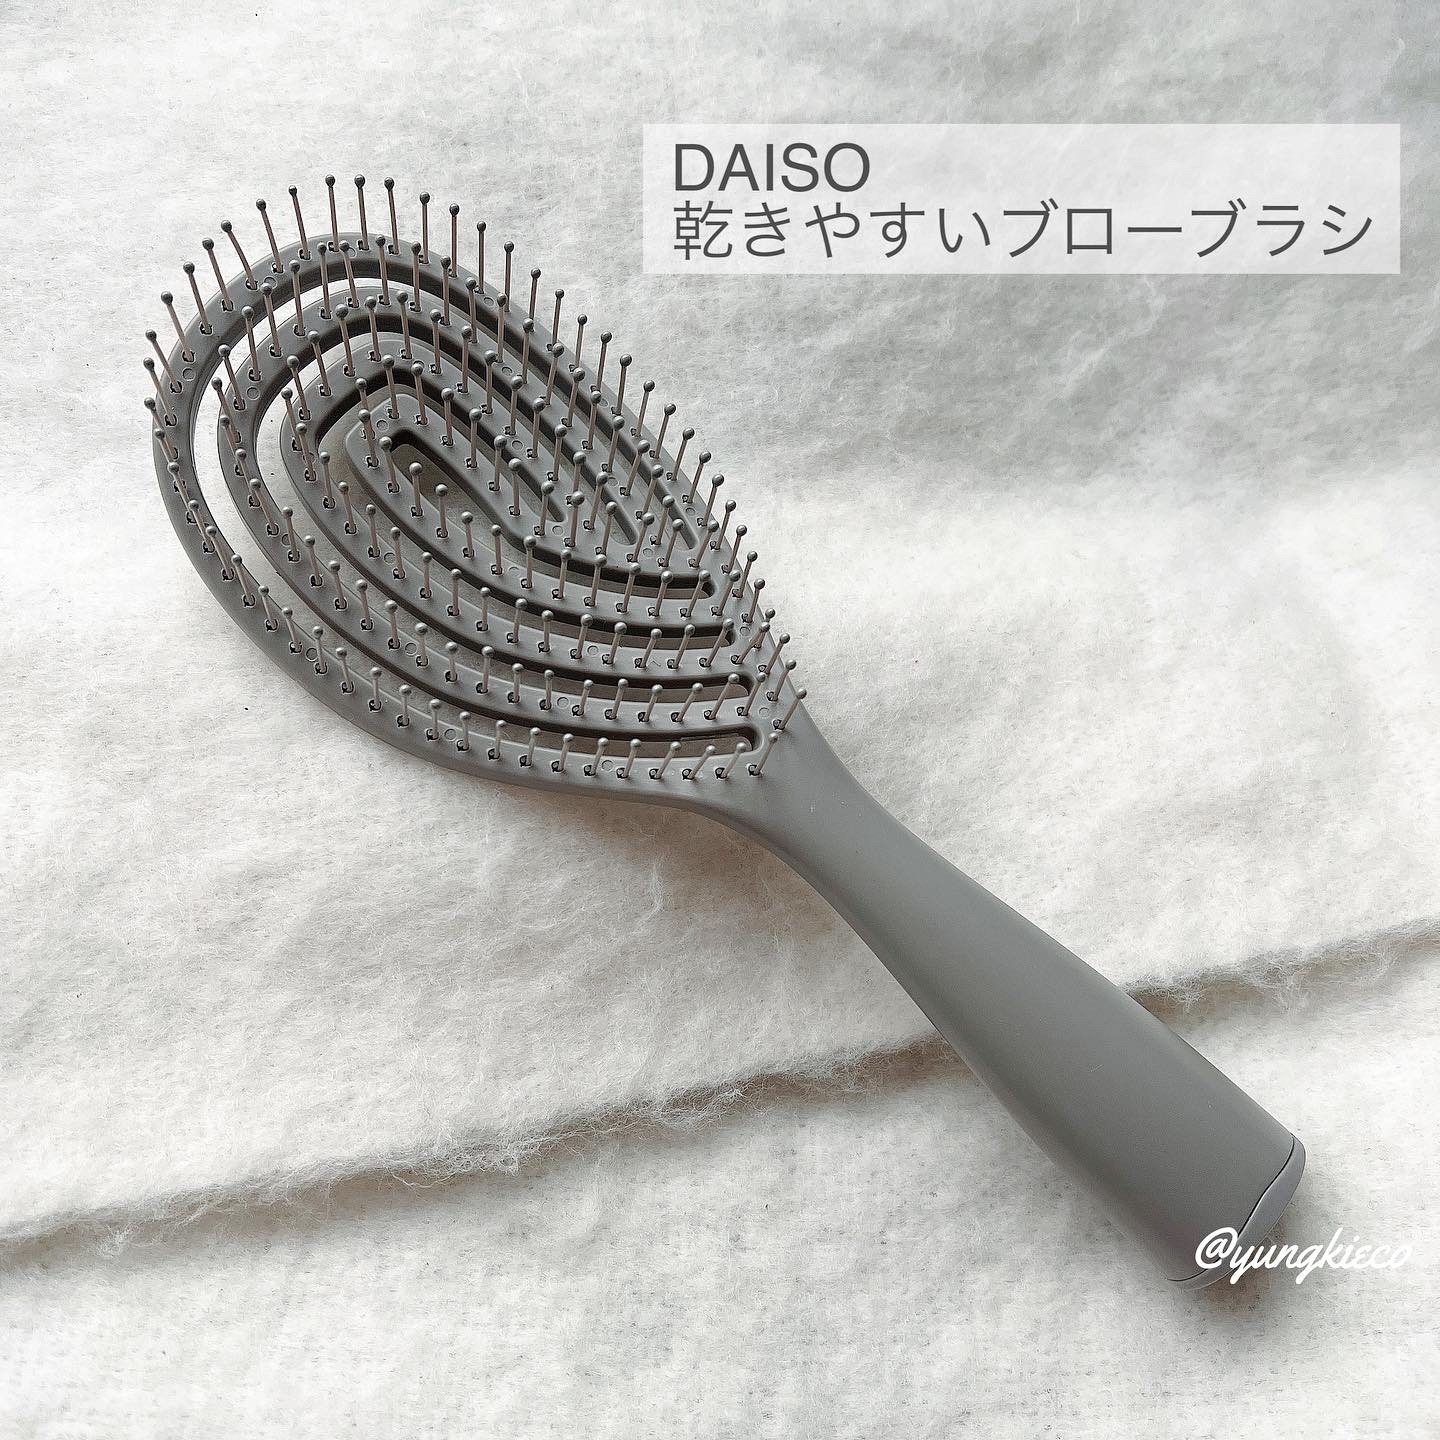 DAISO(ダイソー) 乾きやすいブローブラシの良い点・メリットに関するyungさんの口コミ画像1